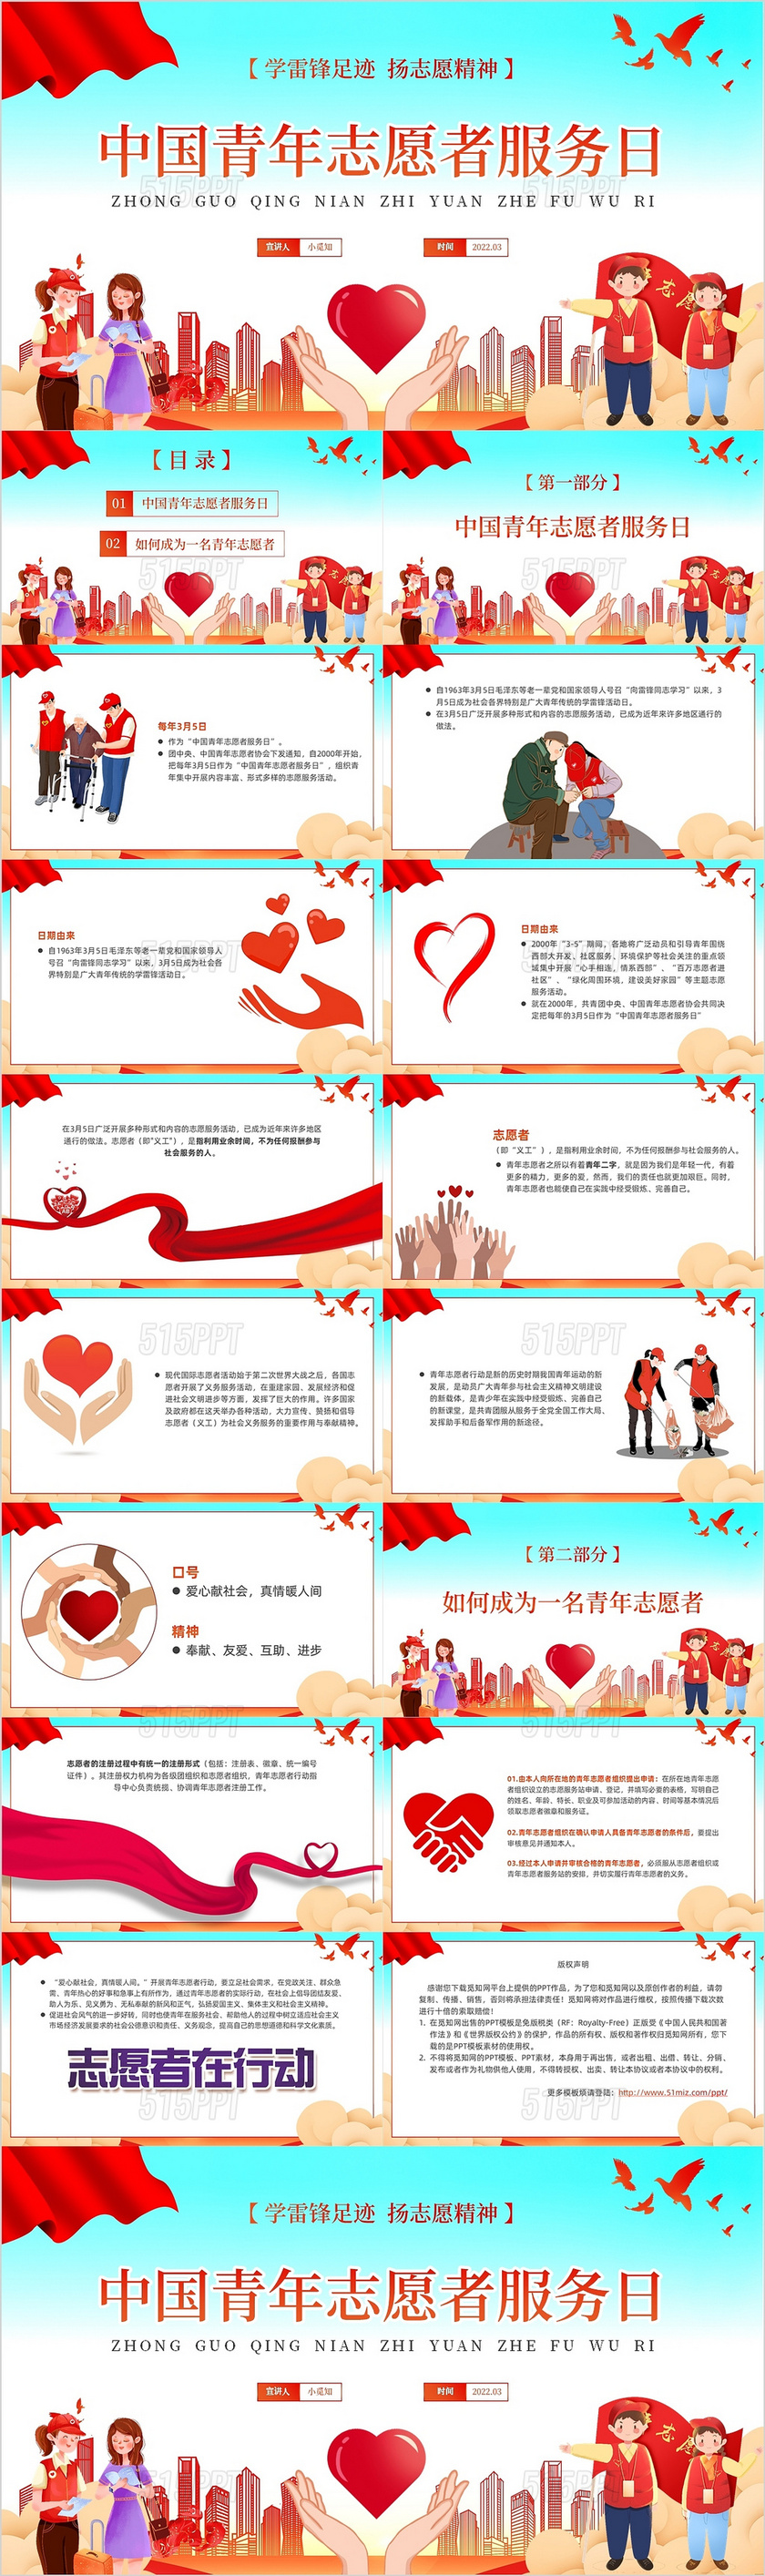 红色卡通中国青年志愿者服务日